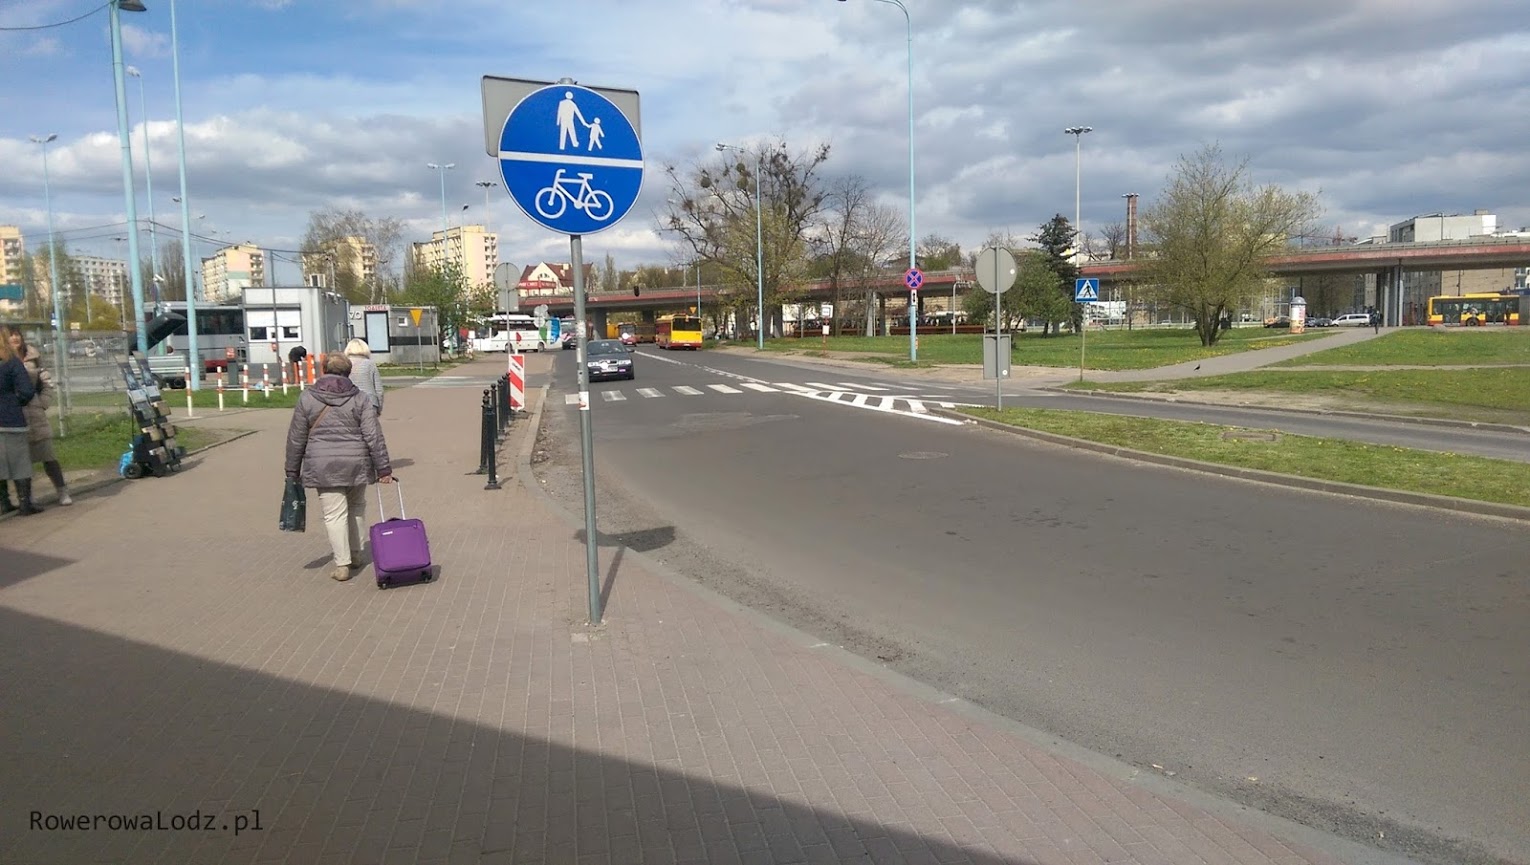 Bliżej dworca PKS dostawiono jeszcze znak, ale jazda rowerem w tym miejscu jest uciążliwa i co chwila są przejścia dla pieszych